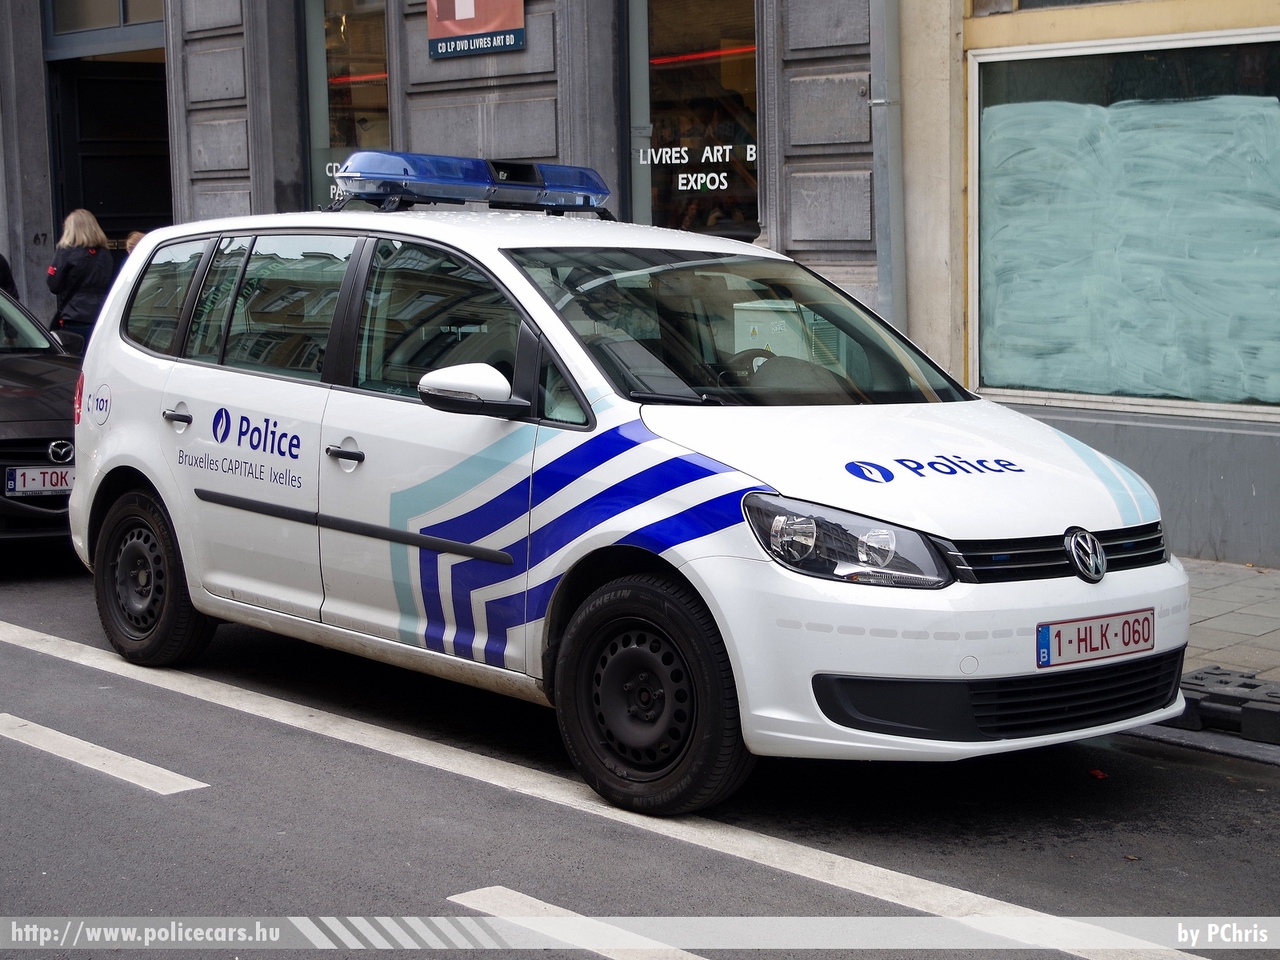 Volkswagen Touran, Brüsszel, fotó: PChris
Keywords: belga Belgium rendőr rendőrautó rendőrség belgian police policecar